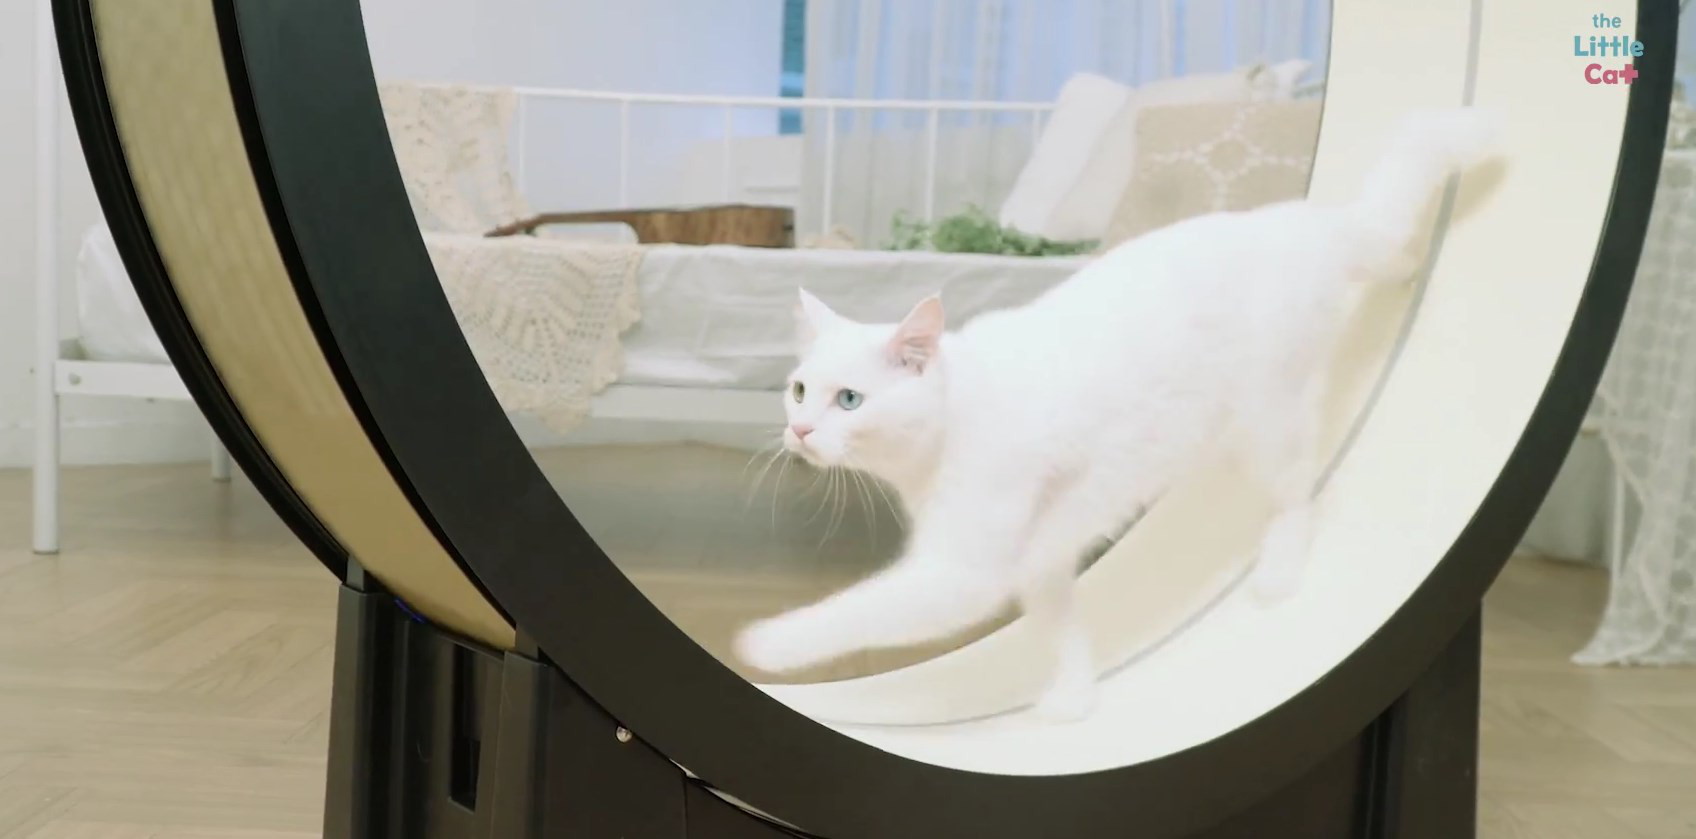 Видео дня: умная беговая дорожка для котов The Little Cat - Лайфхакер